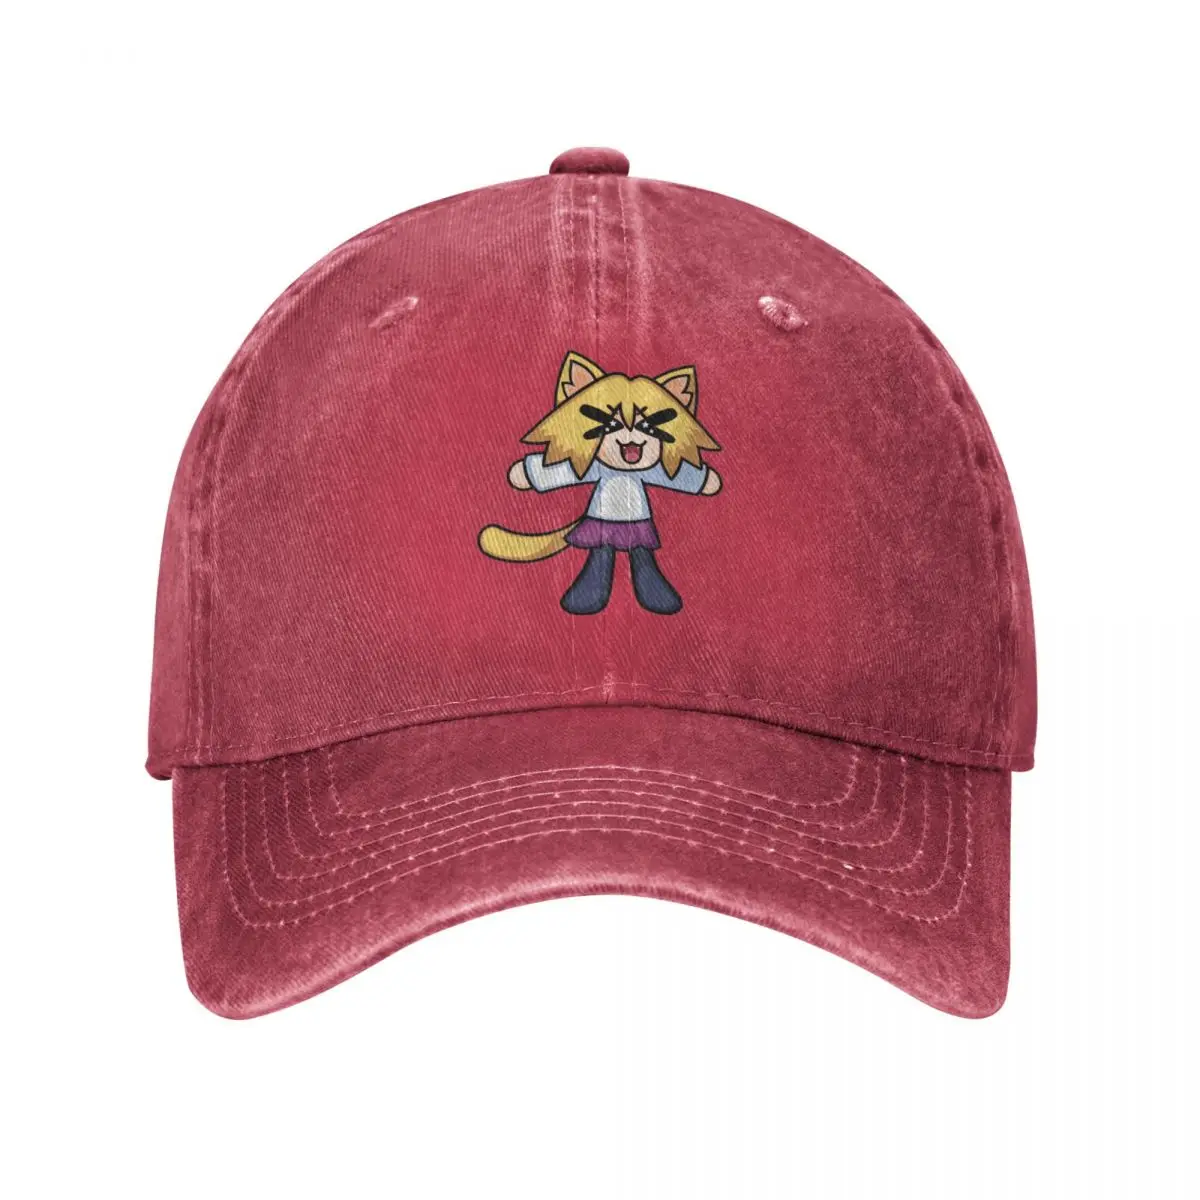 

Fashion Neco Arc Yelling Baseball Cap Unisex Style Distressed Denim Washed Snapback Hat Outdoor Summer Hats Cap